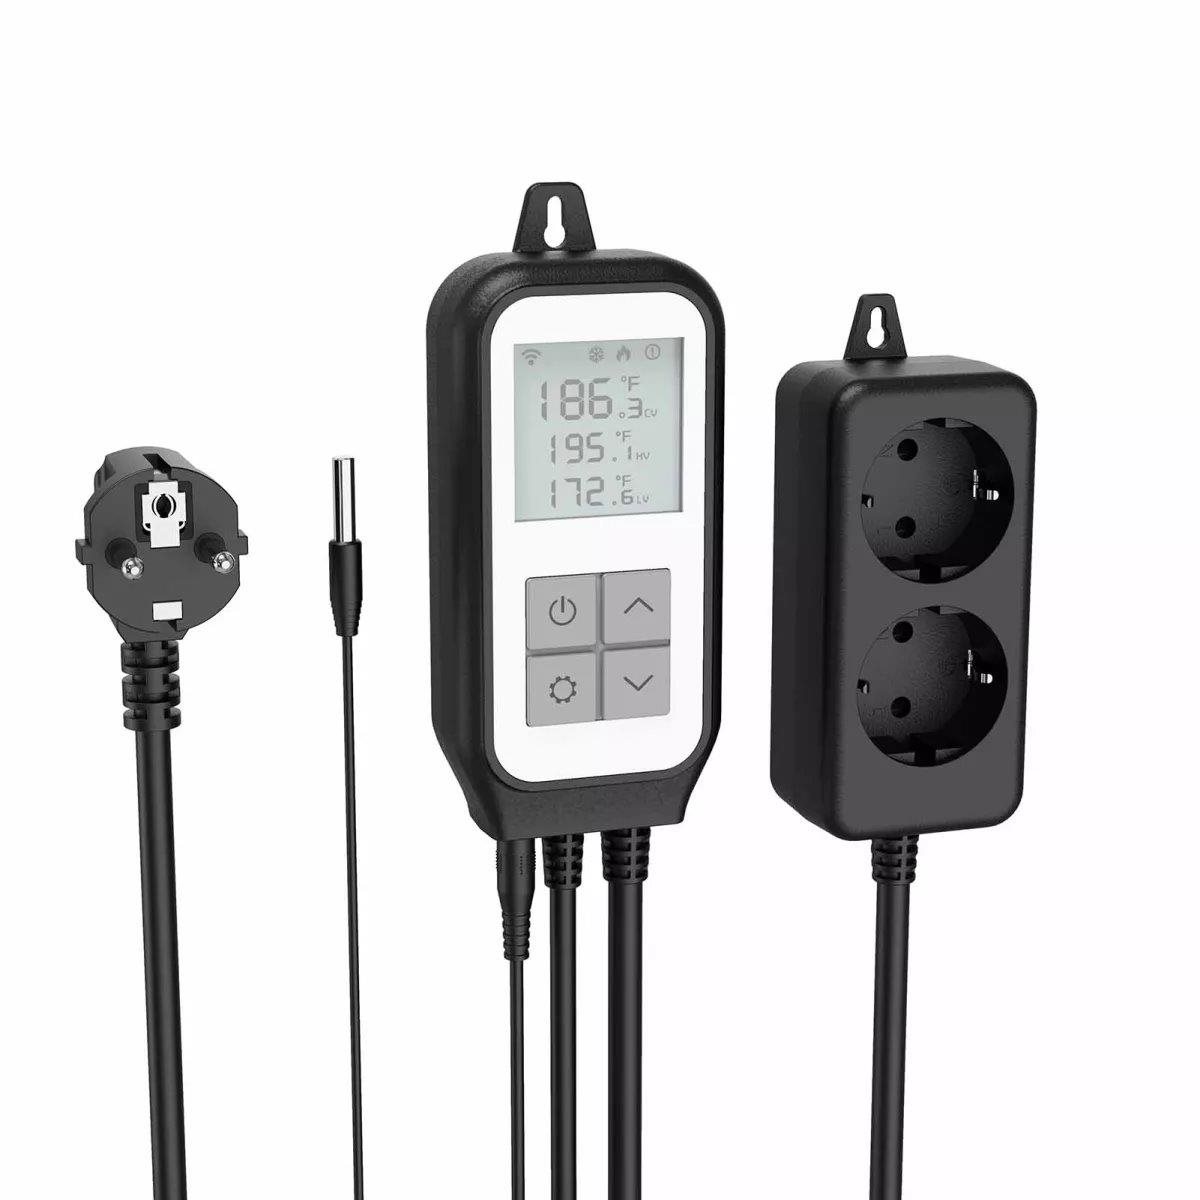 Okos konnektor iQtech SmartLife TCT01 Wi-Fi adapter hőmérsékletméréssel